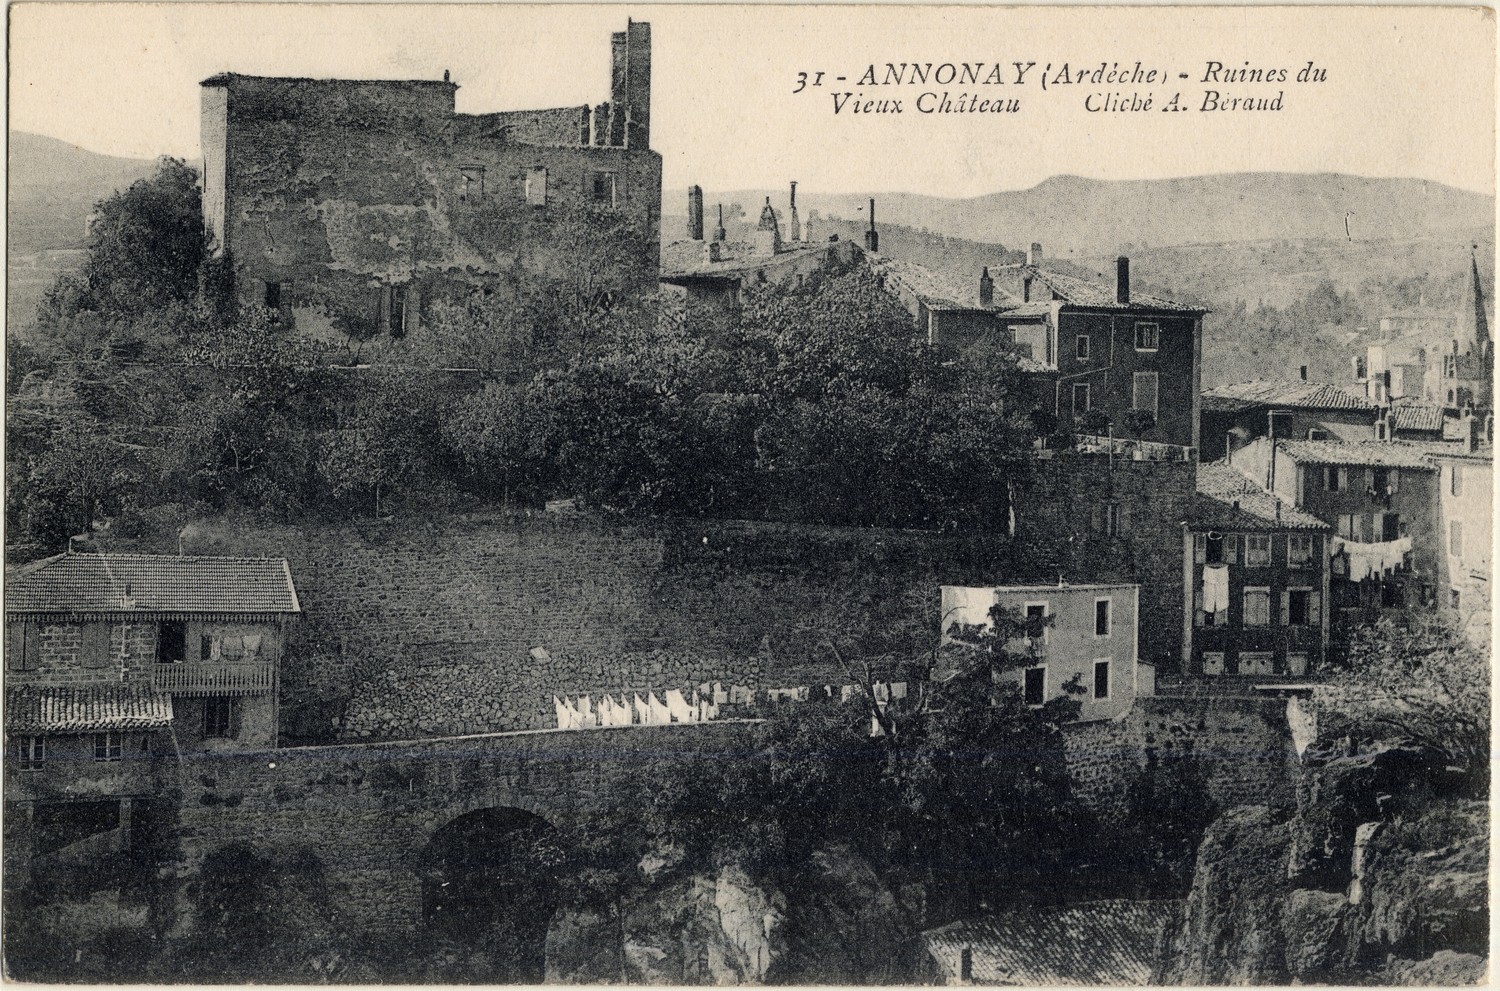 Annonay (Ardèche) - Ruines du Vieux Château